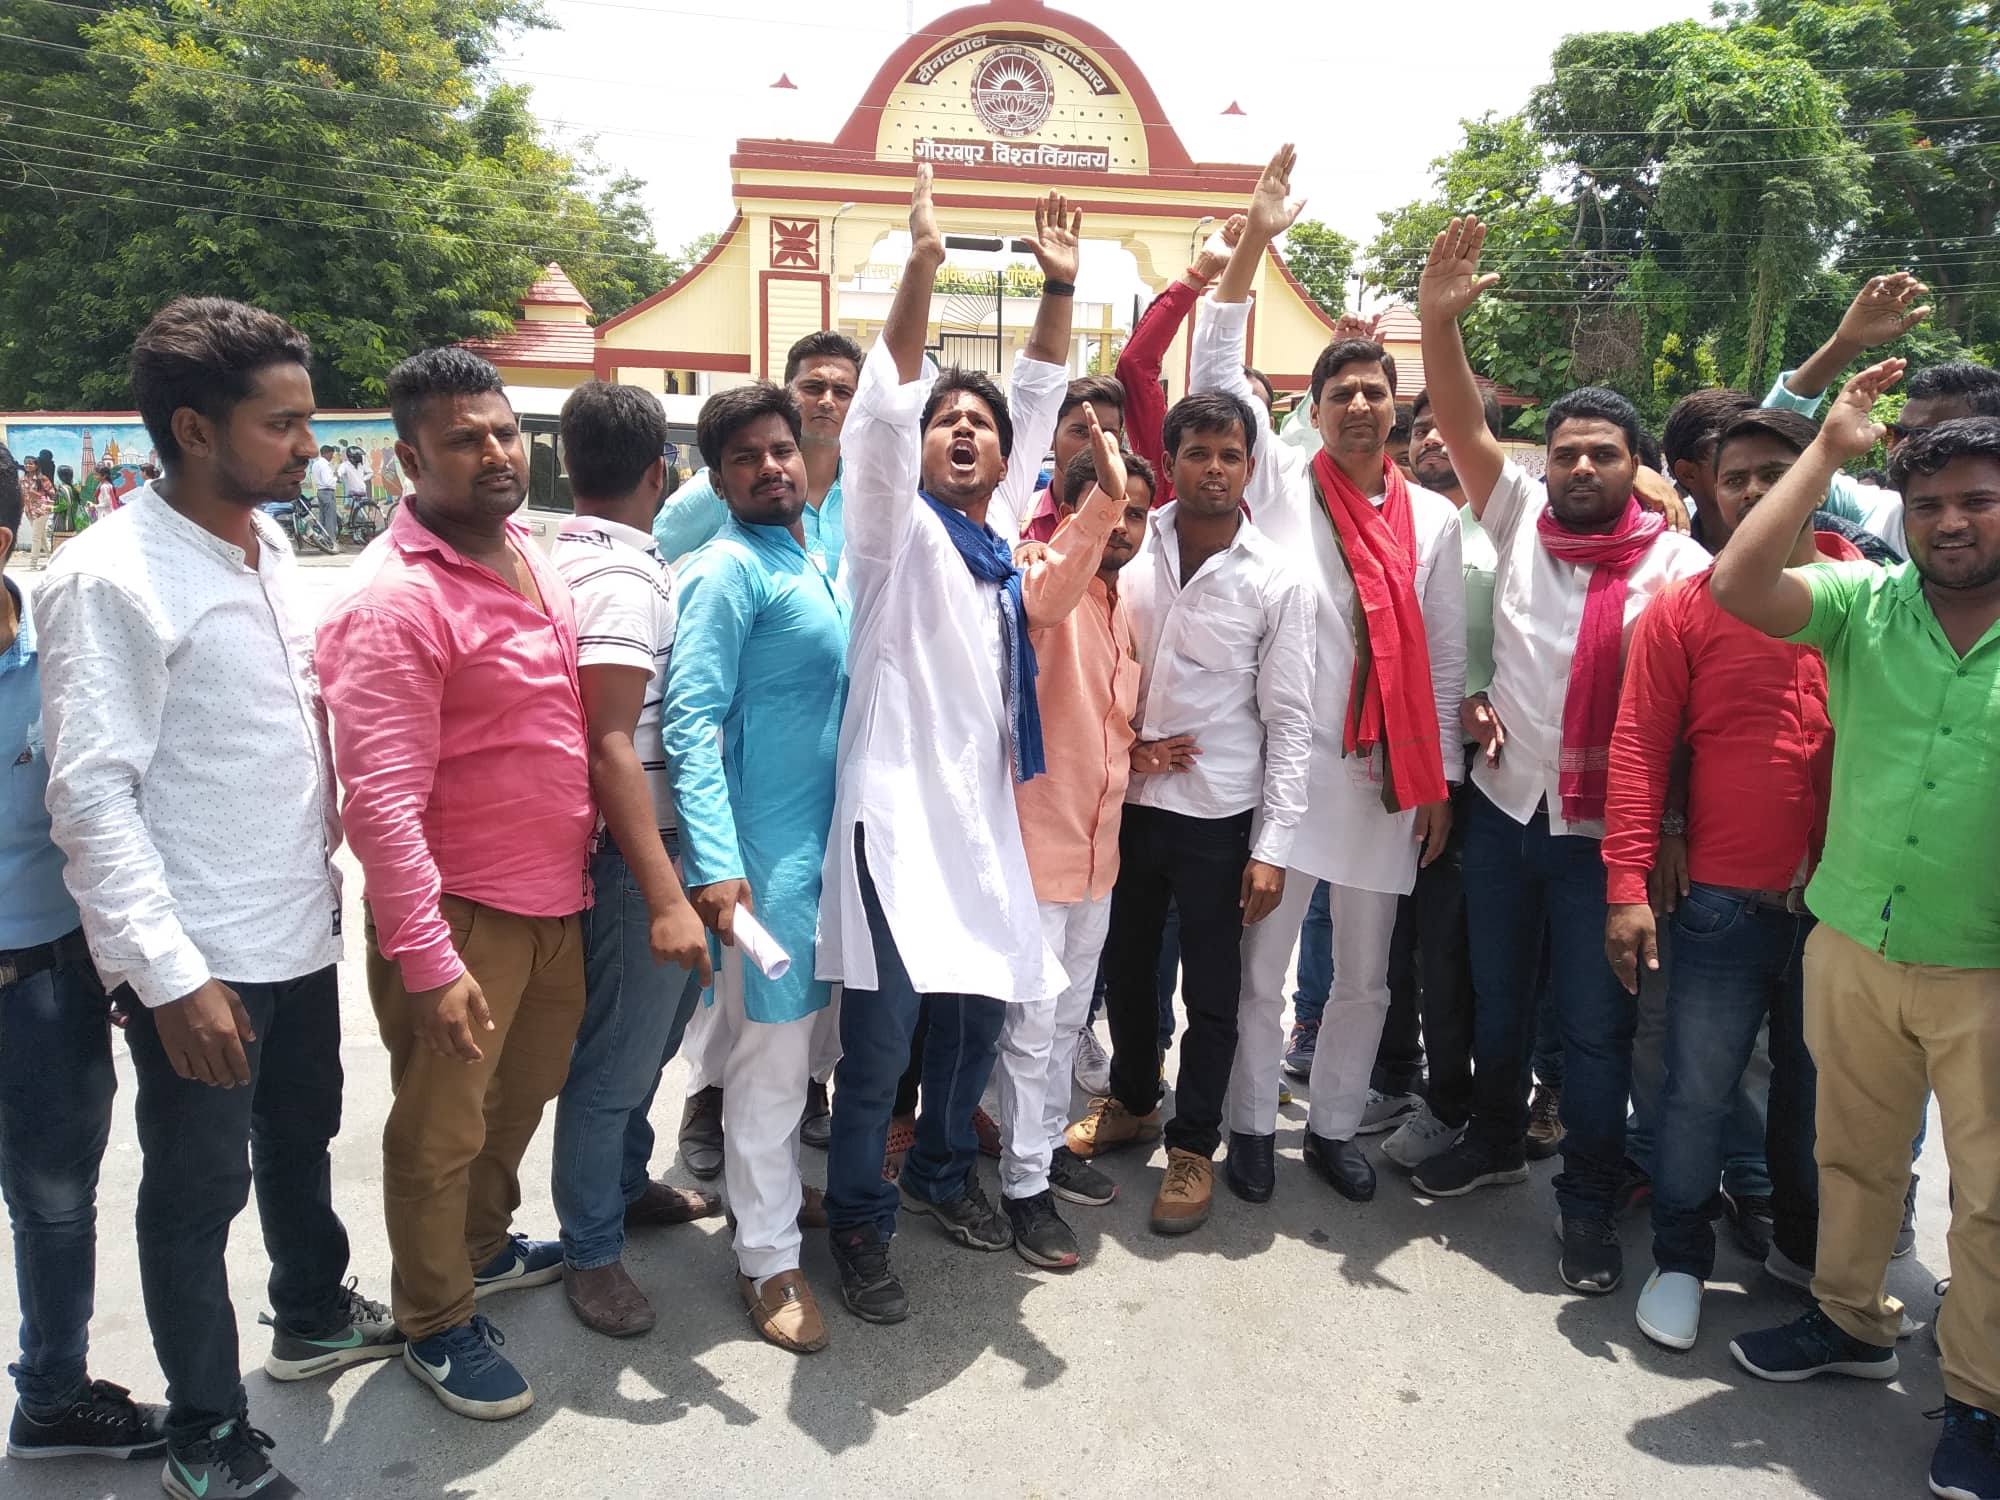 गोरखपुर विश्वविद्यालय में शिक्षक भर्ती में हुई गड़बड़ियों को लेकर विरोध प्रदर्शन हो रहे हैं. (फोटो: धीरज मिश्रा/द वायर) 